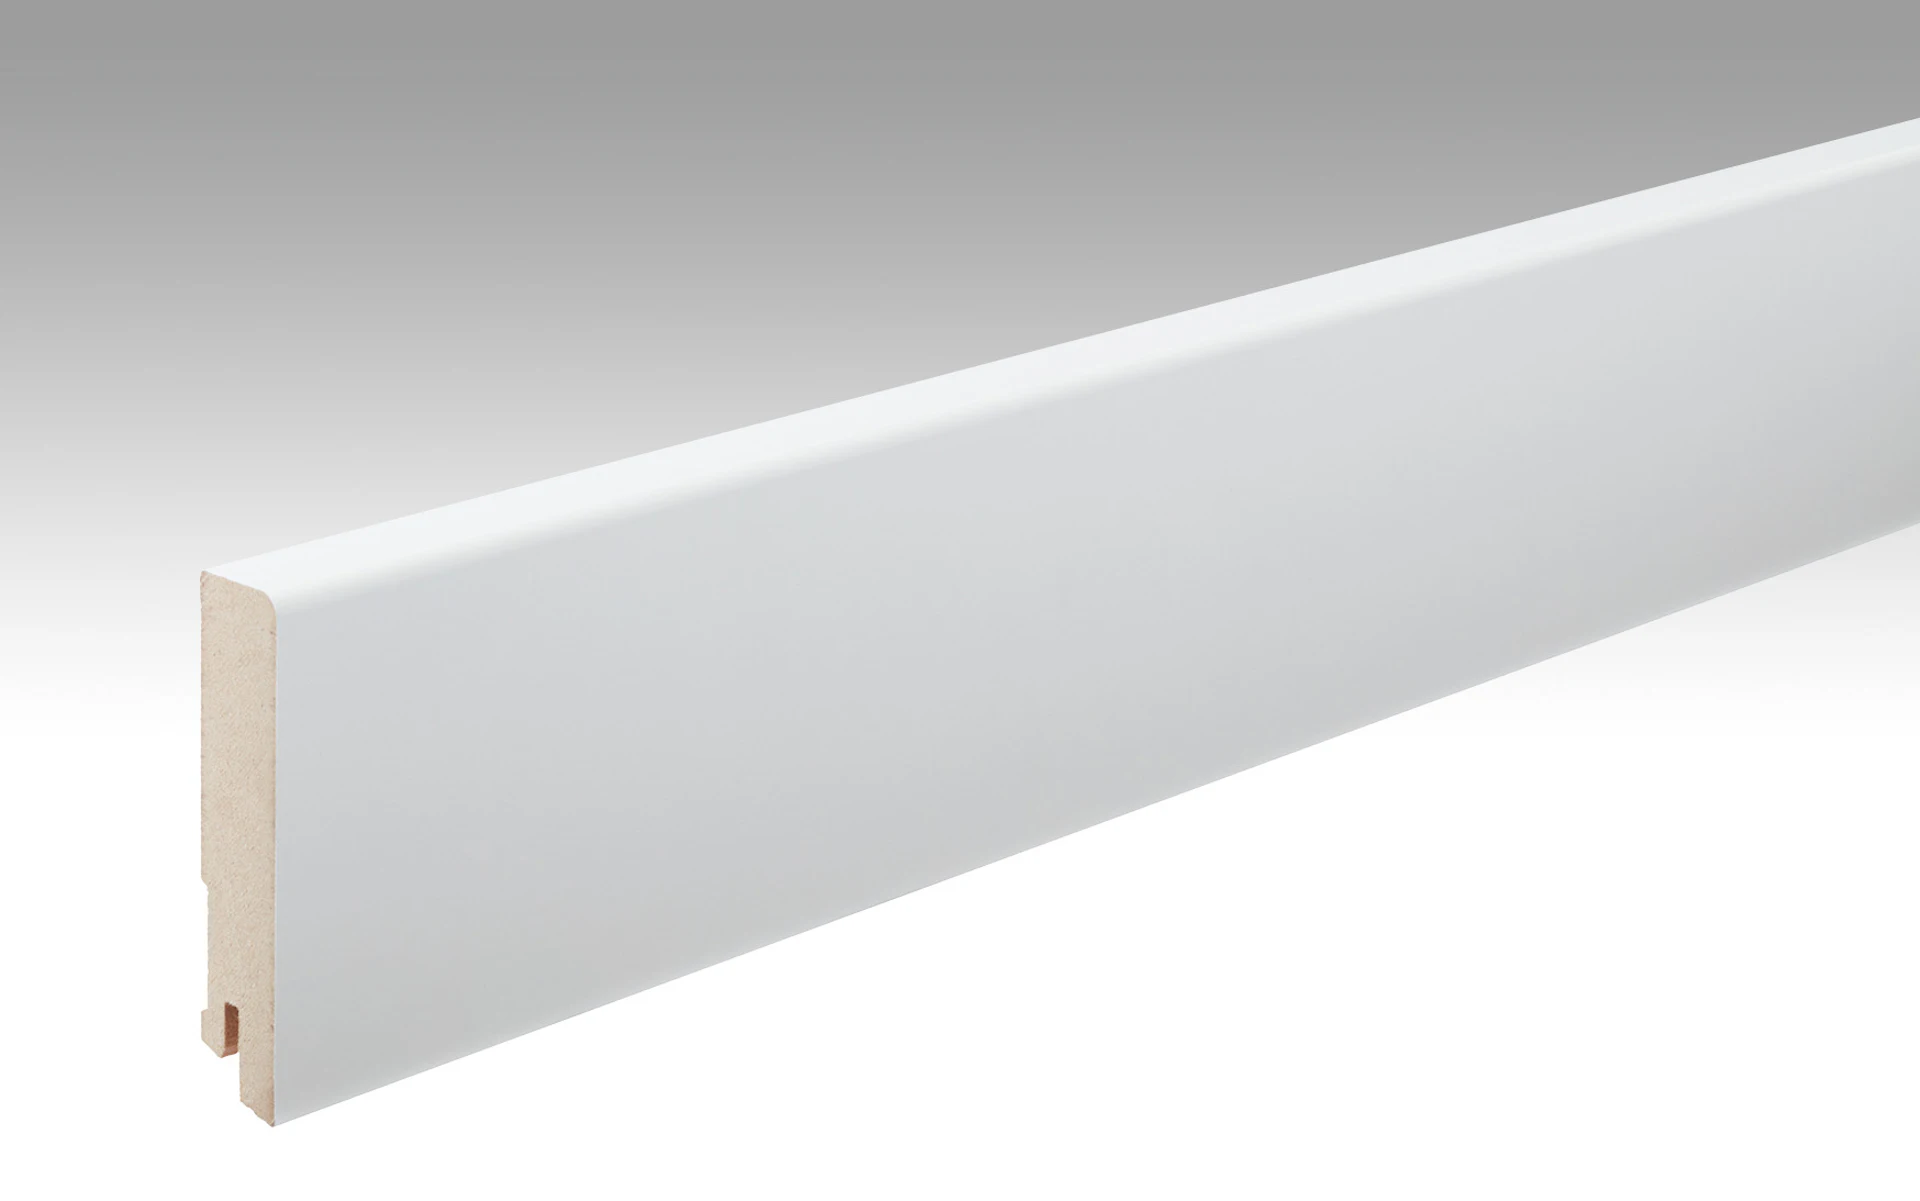 MEISTER Sockelleisten Fußleisten Uni weiß glänzend DF 324 - 2380 x 80 x 16 mm (200011-2380-00324)